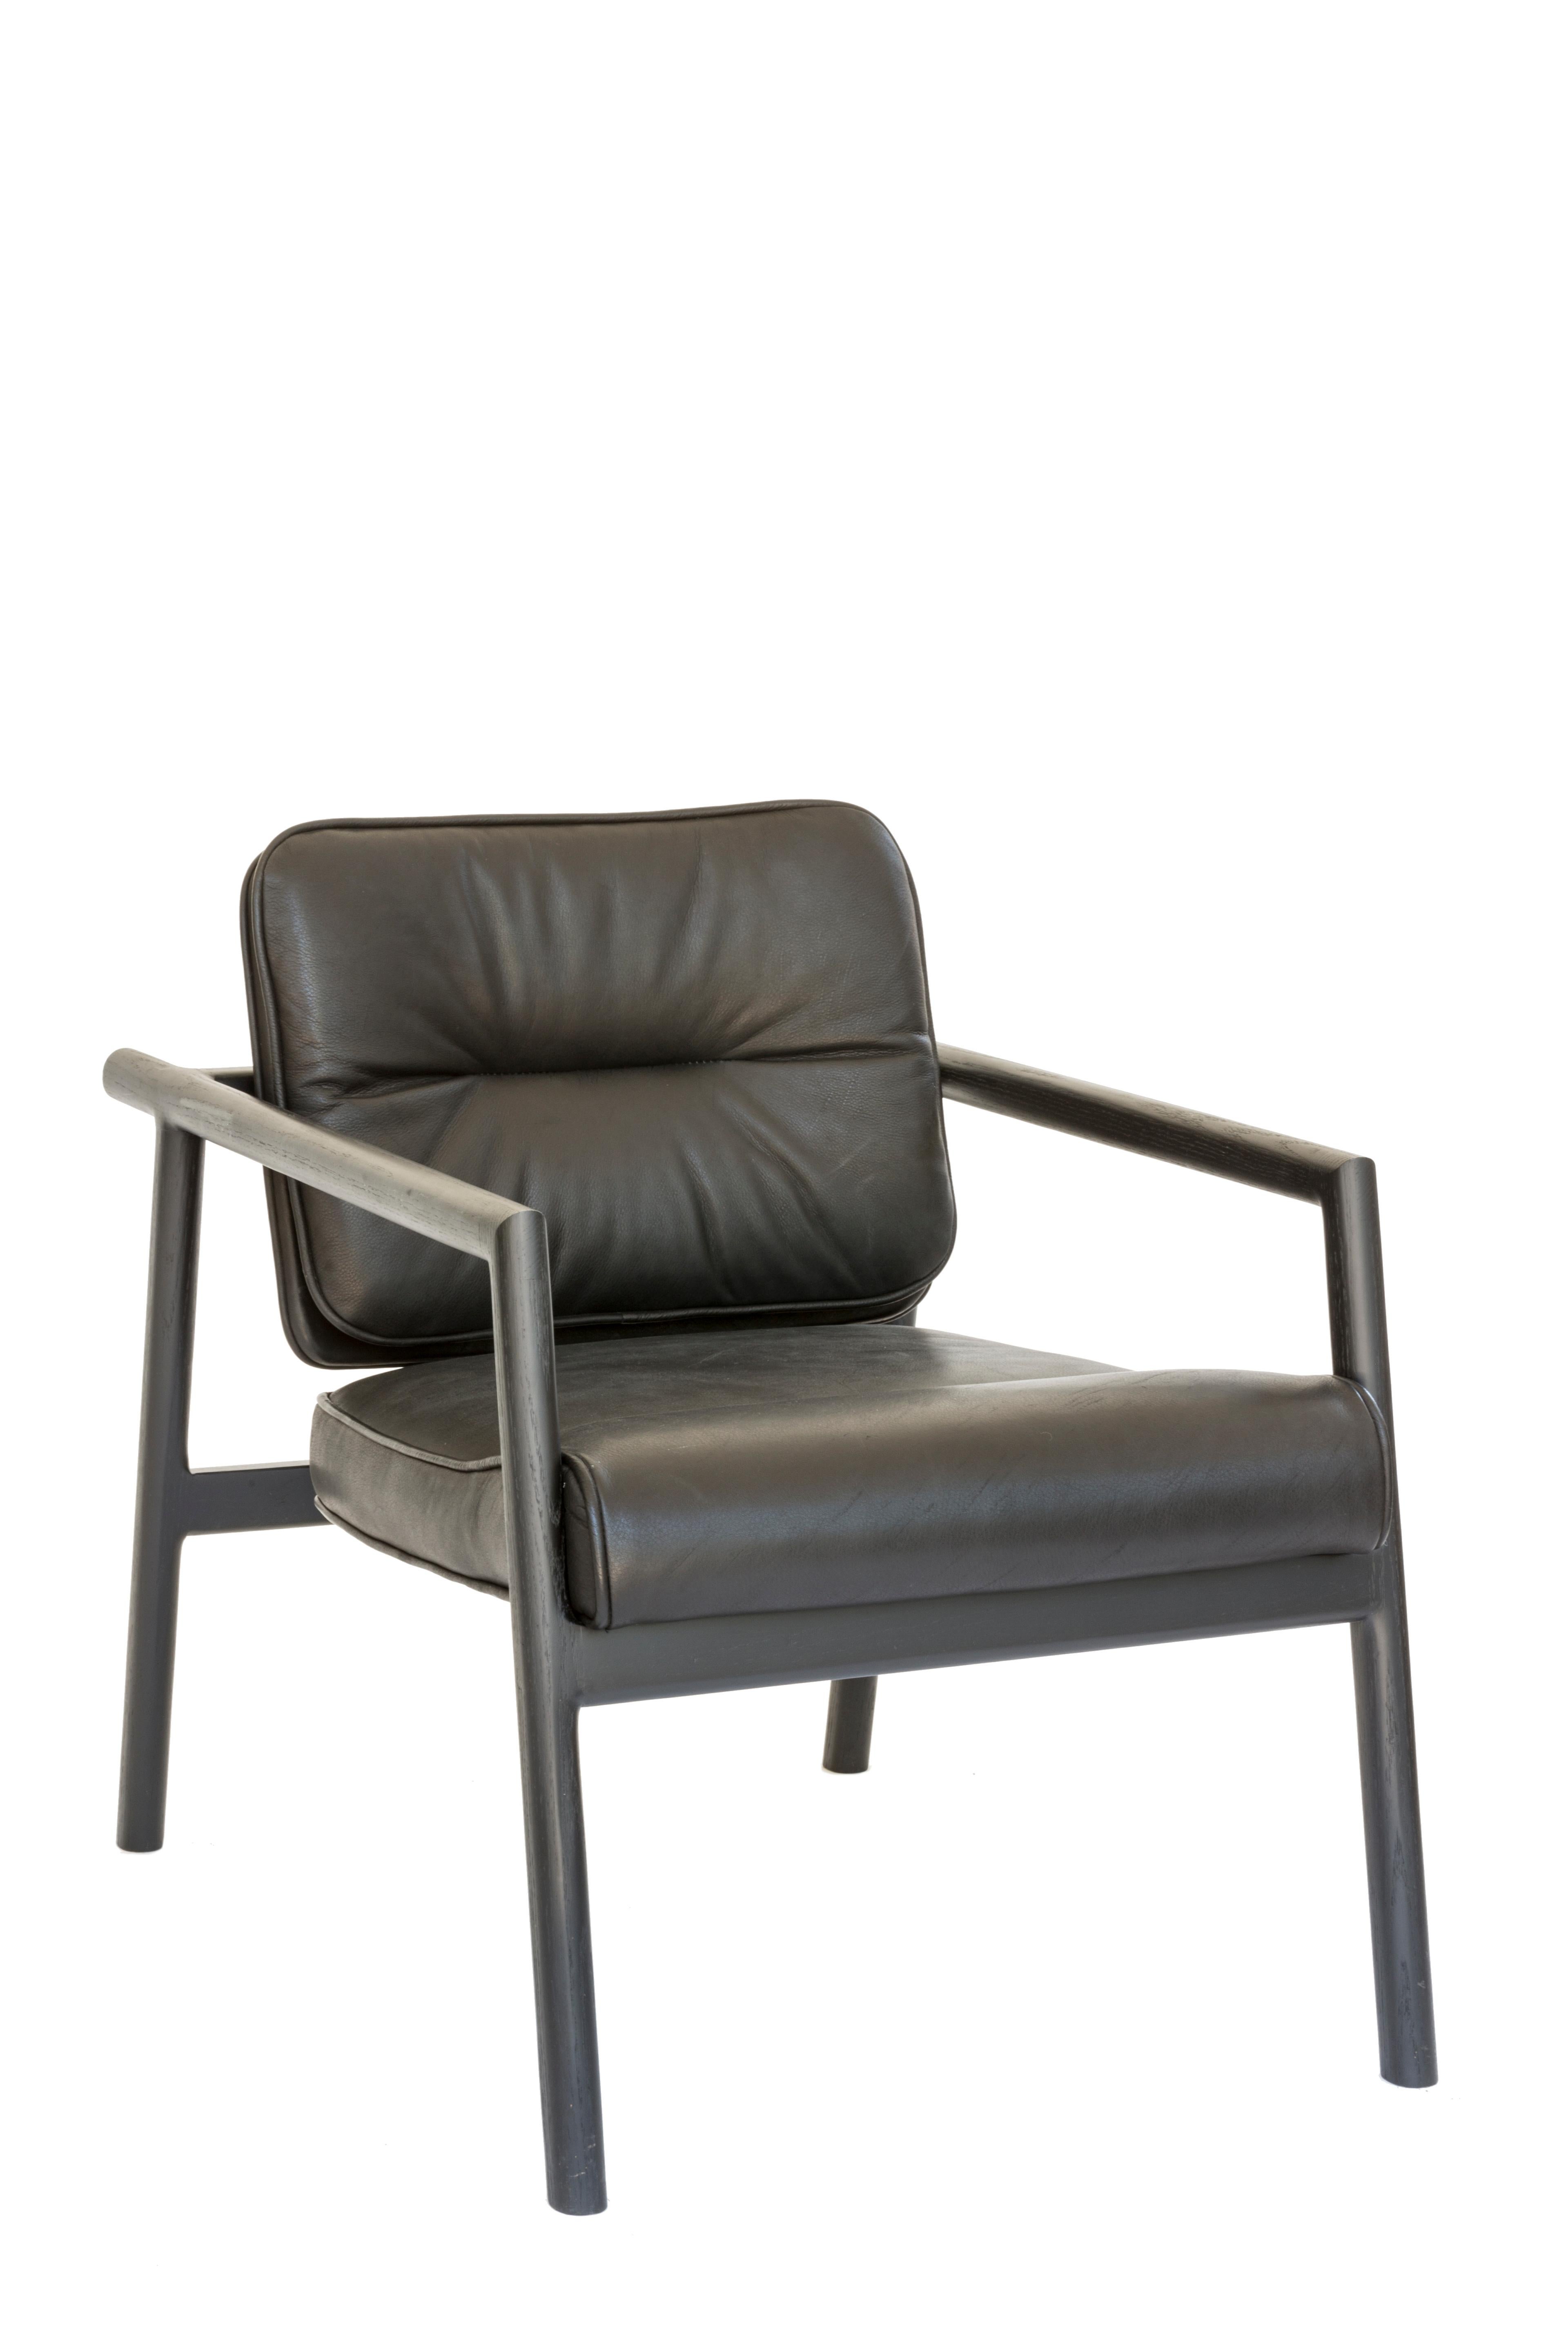 Massivholzkonstruktion mit handgeschnittenen Tischlerarbeiten und individuell gepolstertem Sitz und Rückenlehne. Dieser Stuhl ist in ebonisierter Eiche und schwarzem Leder abgebildet.

Vorrätige Lederauswahl: schwarz, oliv, camel oder vegtan